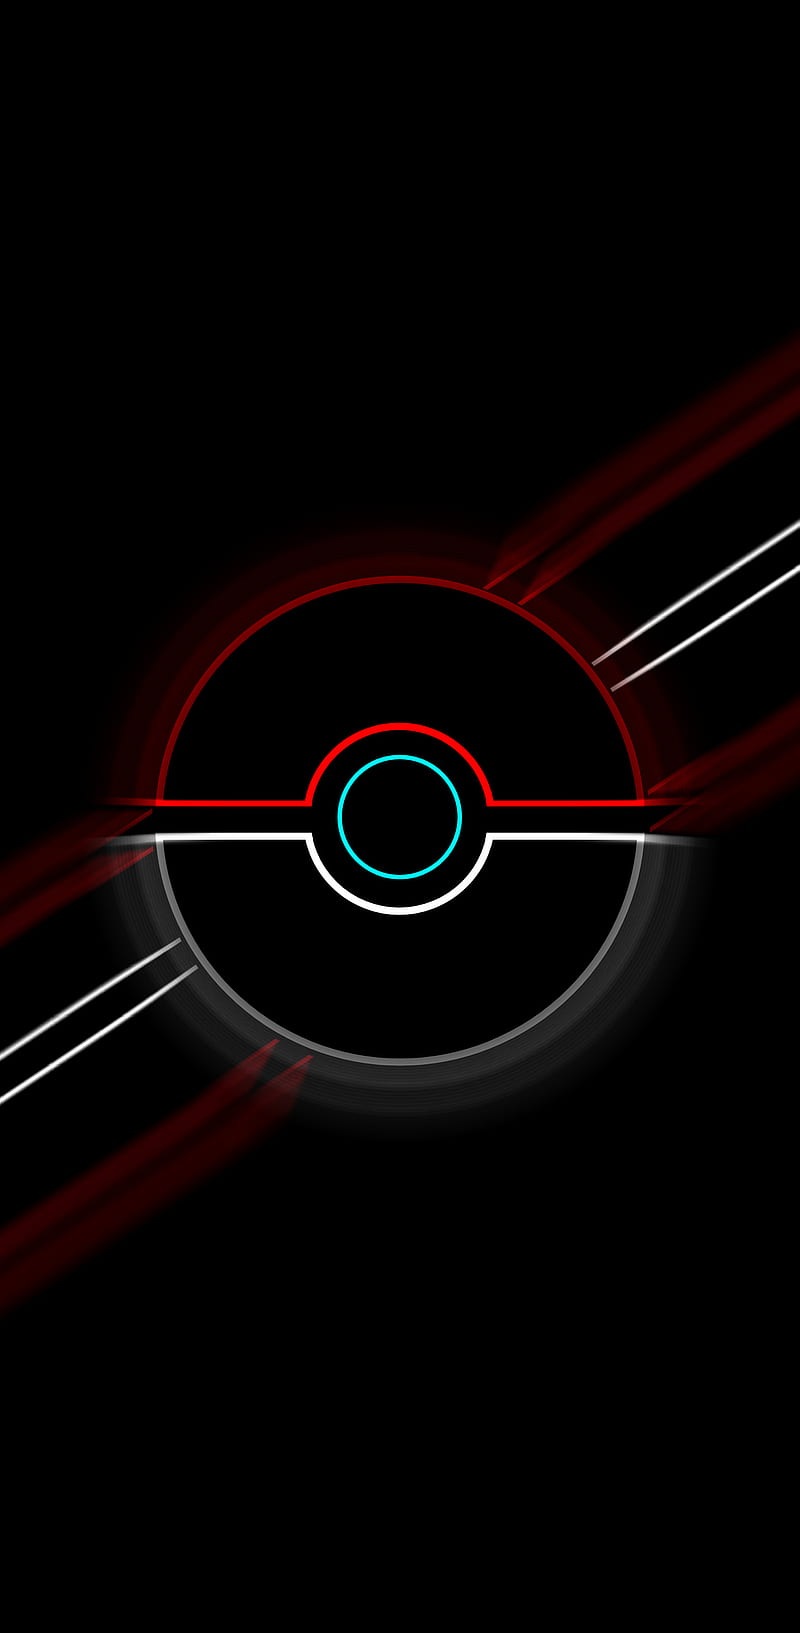 Pokemon, game, poke ball, red, simplistic, HD phone wallpaper